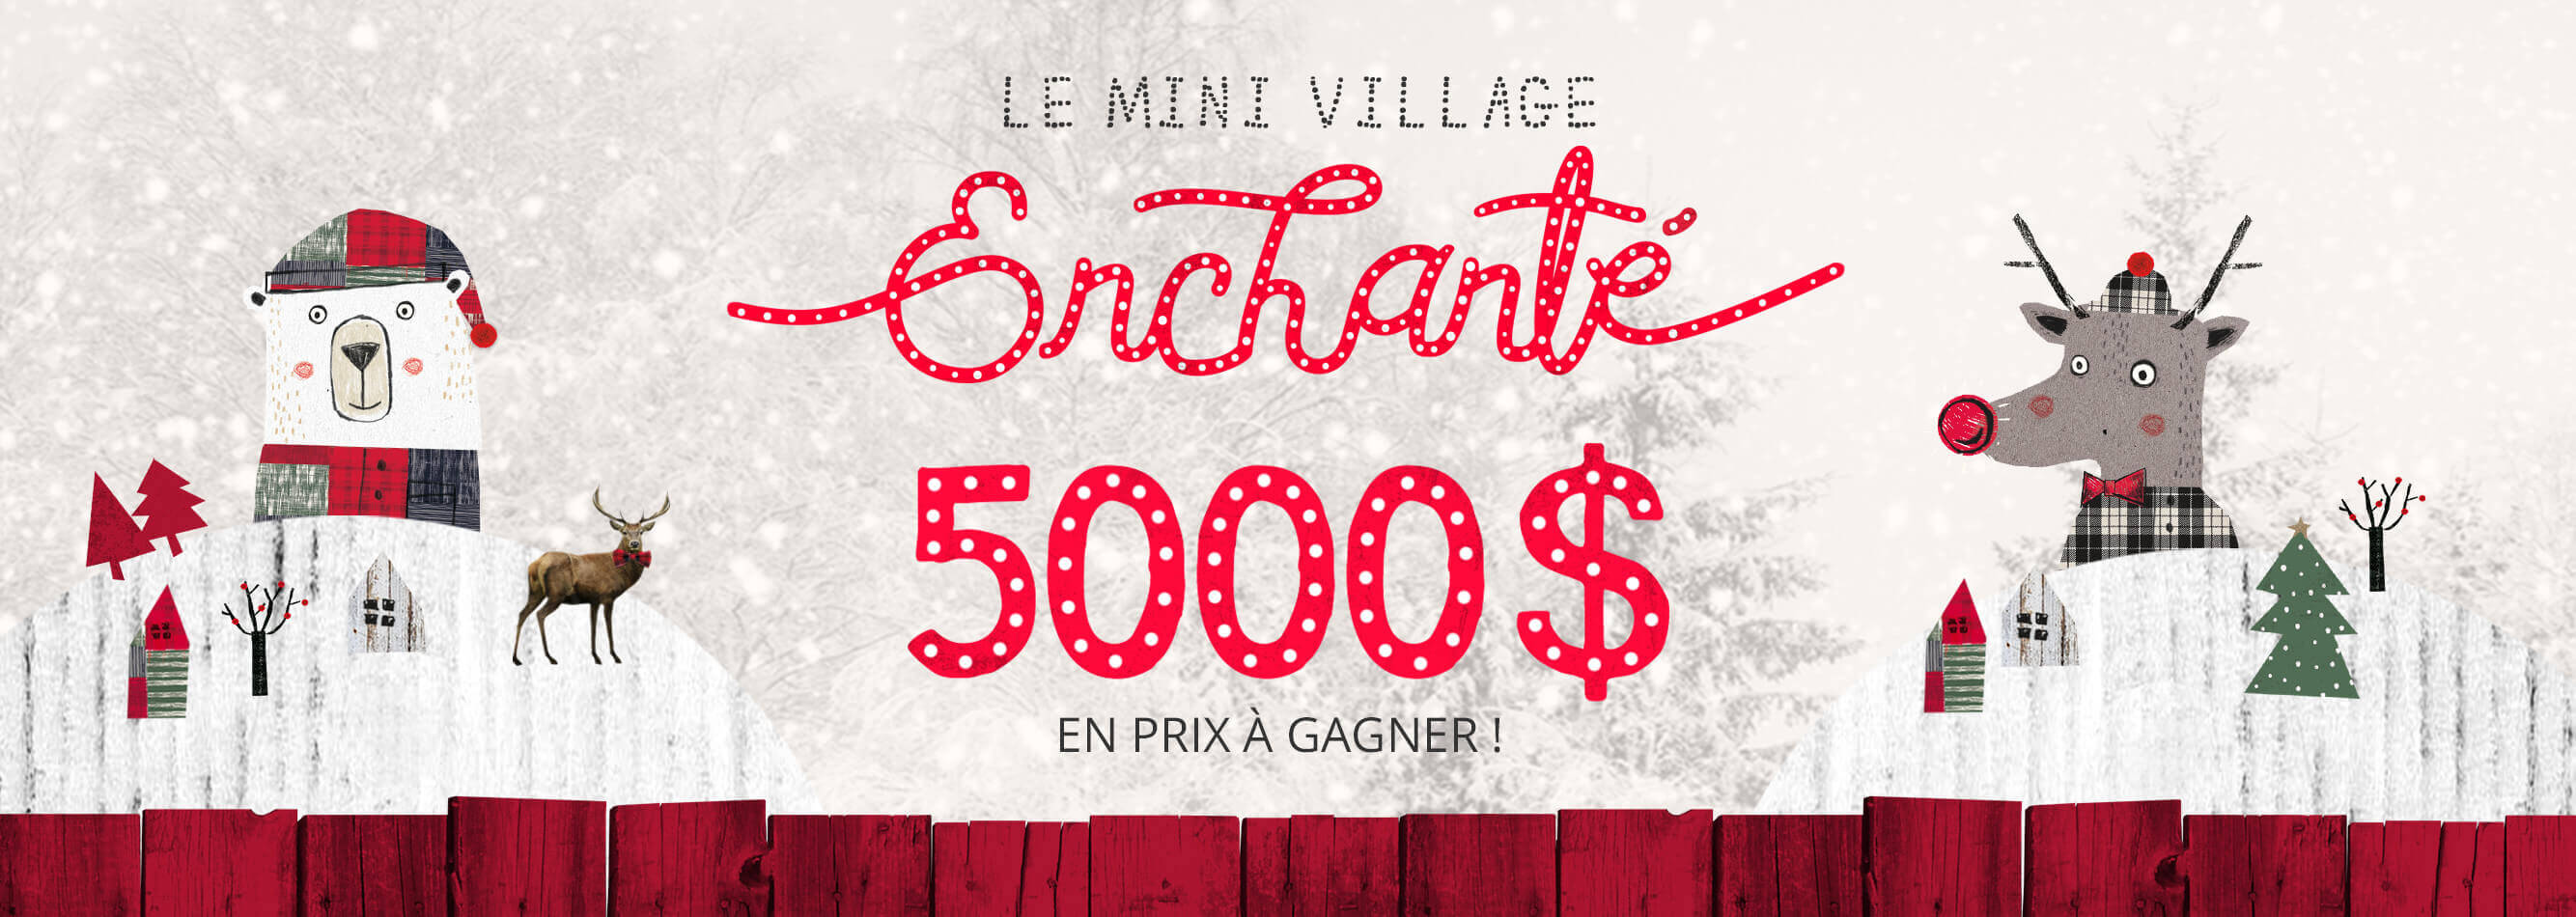 Concours Souris Mini Village Enchanté